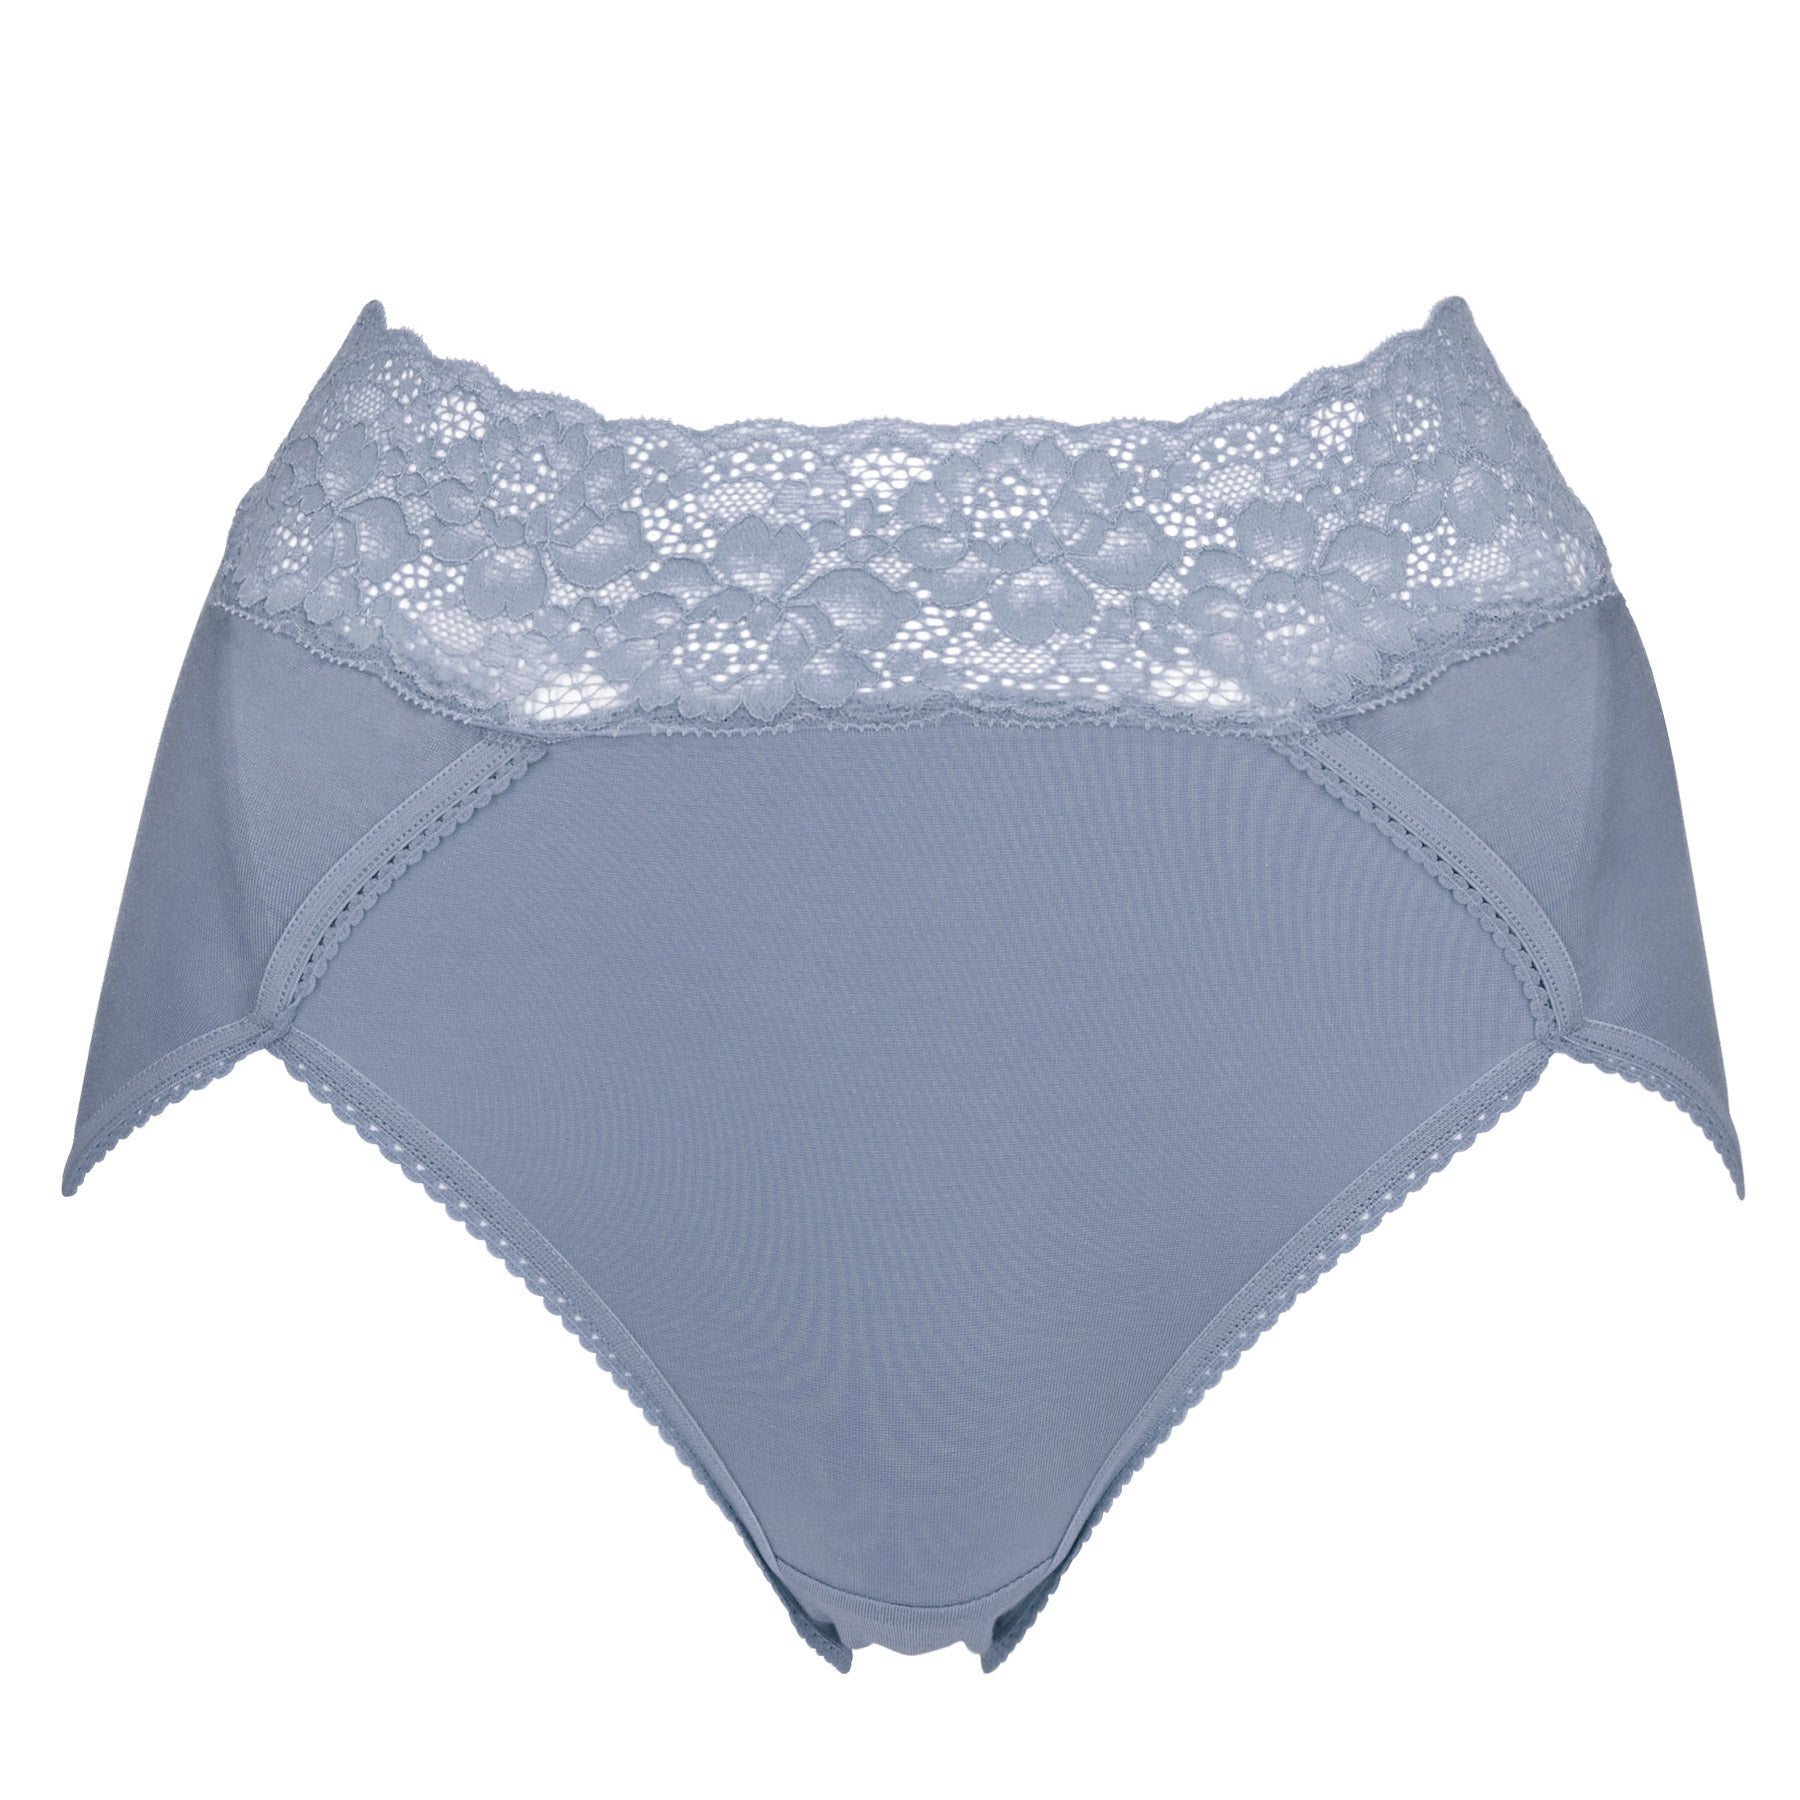 High-Waisted French-Cut Lace Bikini Underwear for Women